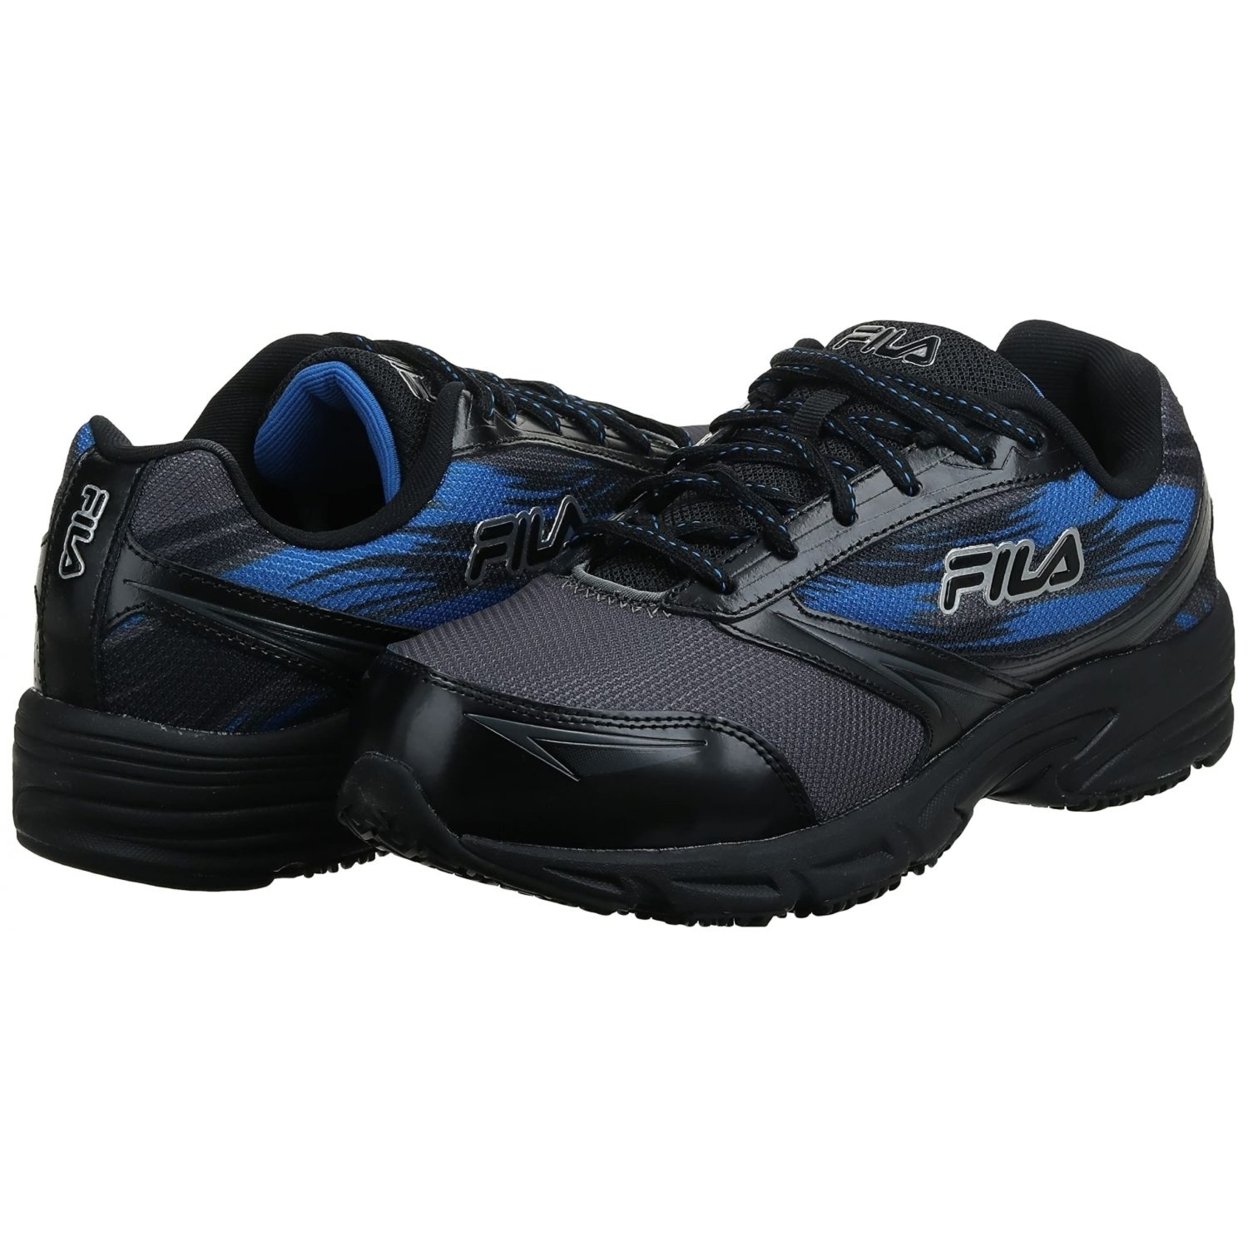 Fila Menâs Memory Meiera 2 Slip Resistant And Composite Toe Work Shoe CSRK/BLK/PRBL - Castlerock/Black/Prince Blue, 9